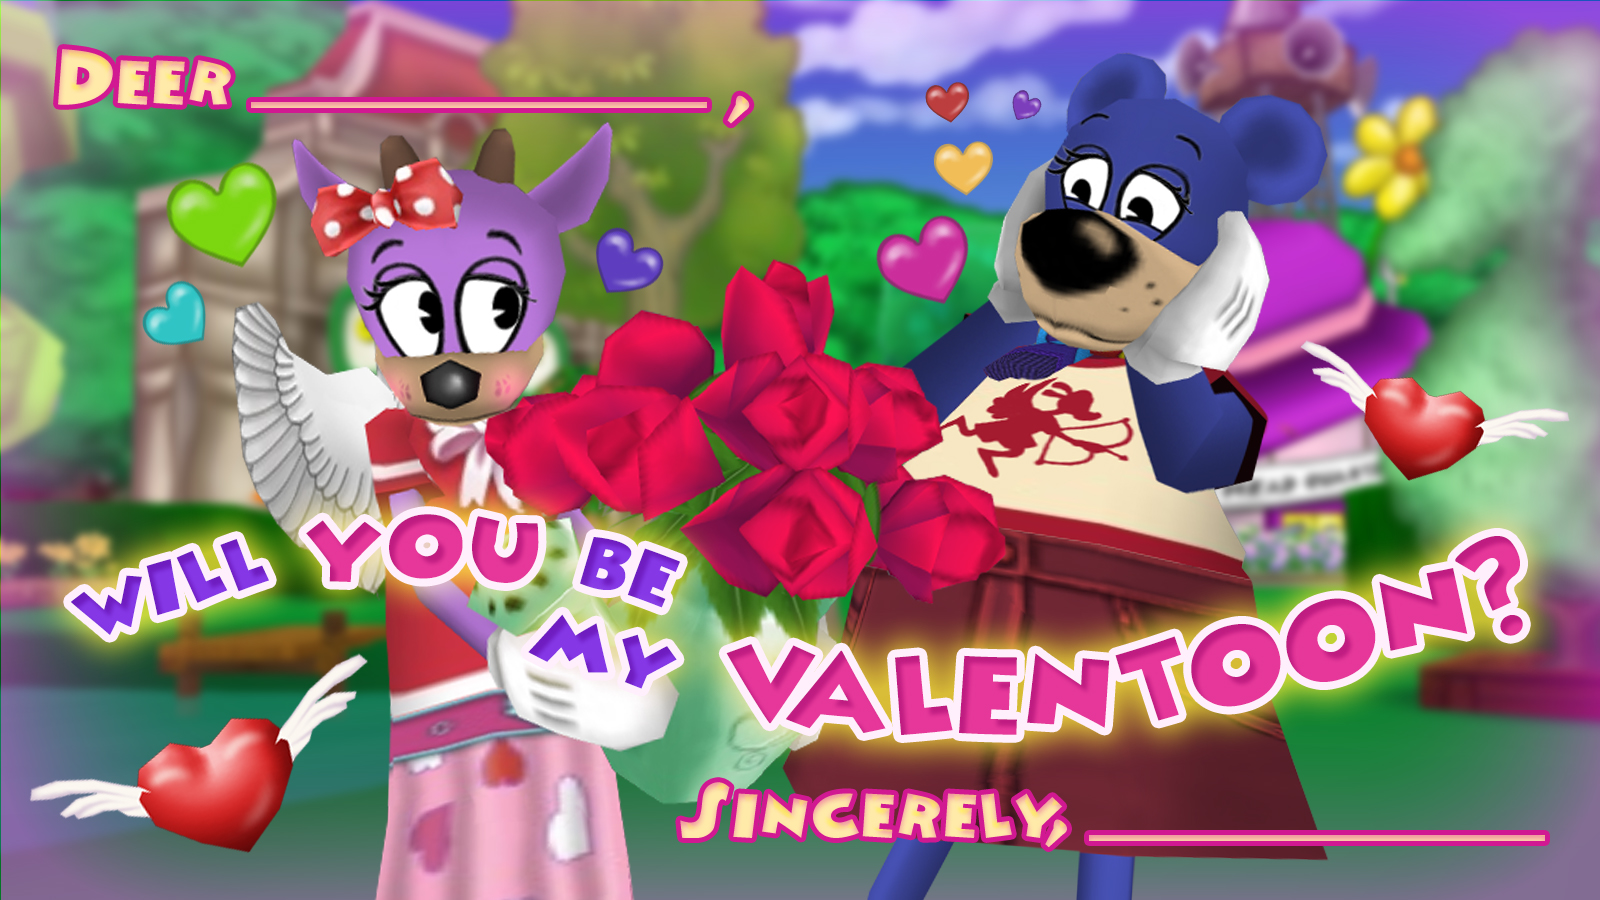 Deer Valentine - Will you be my ValenToon?